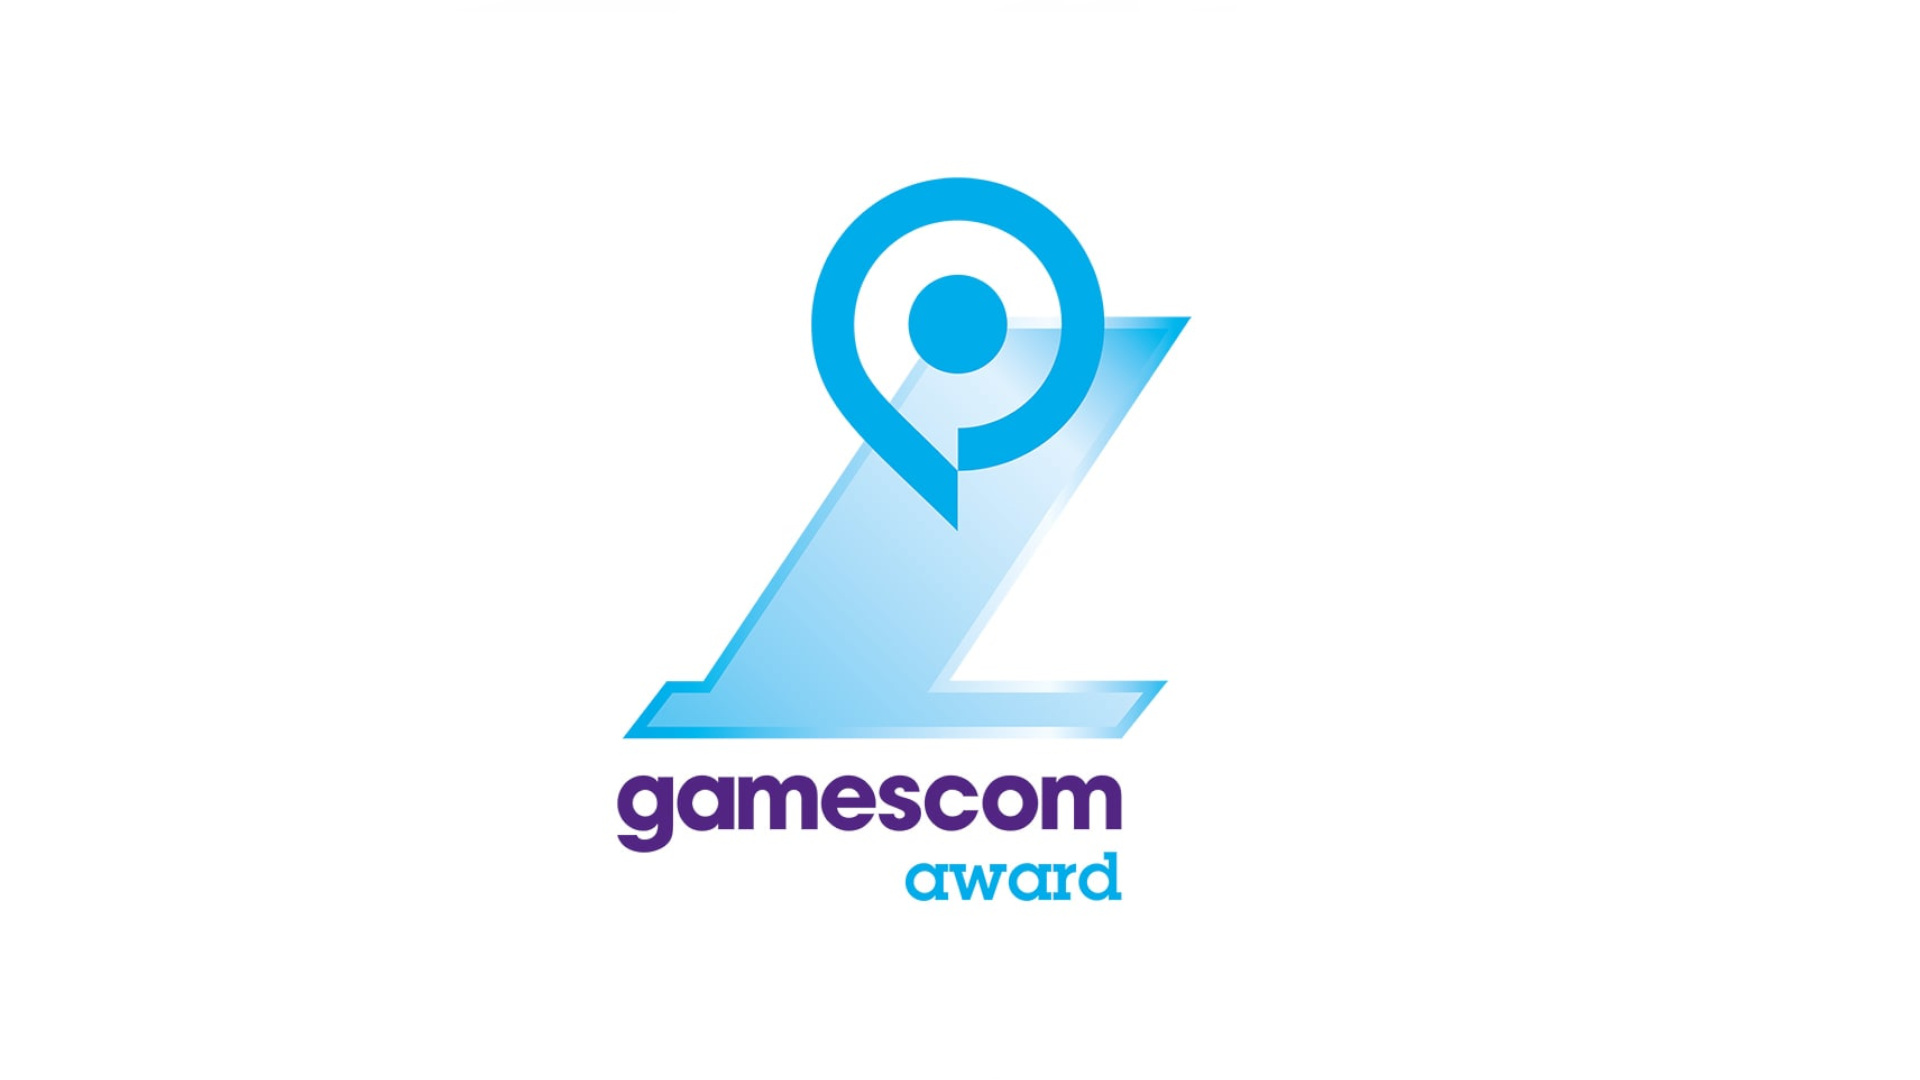 gamescom awards 2021